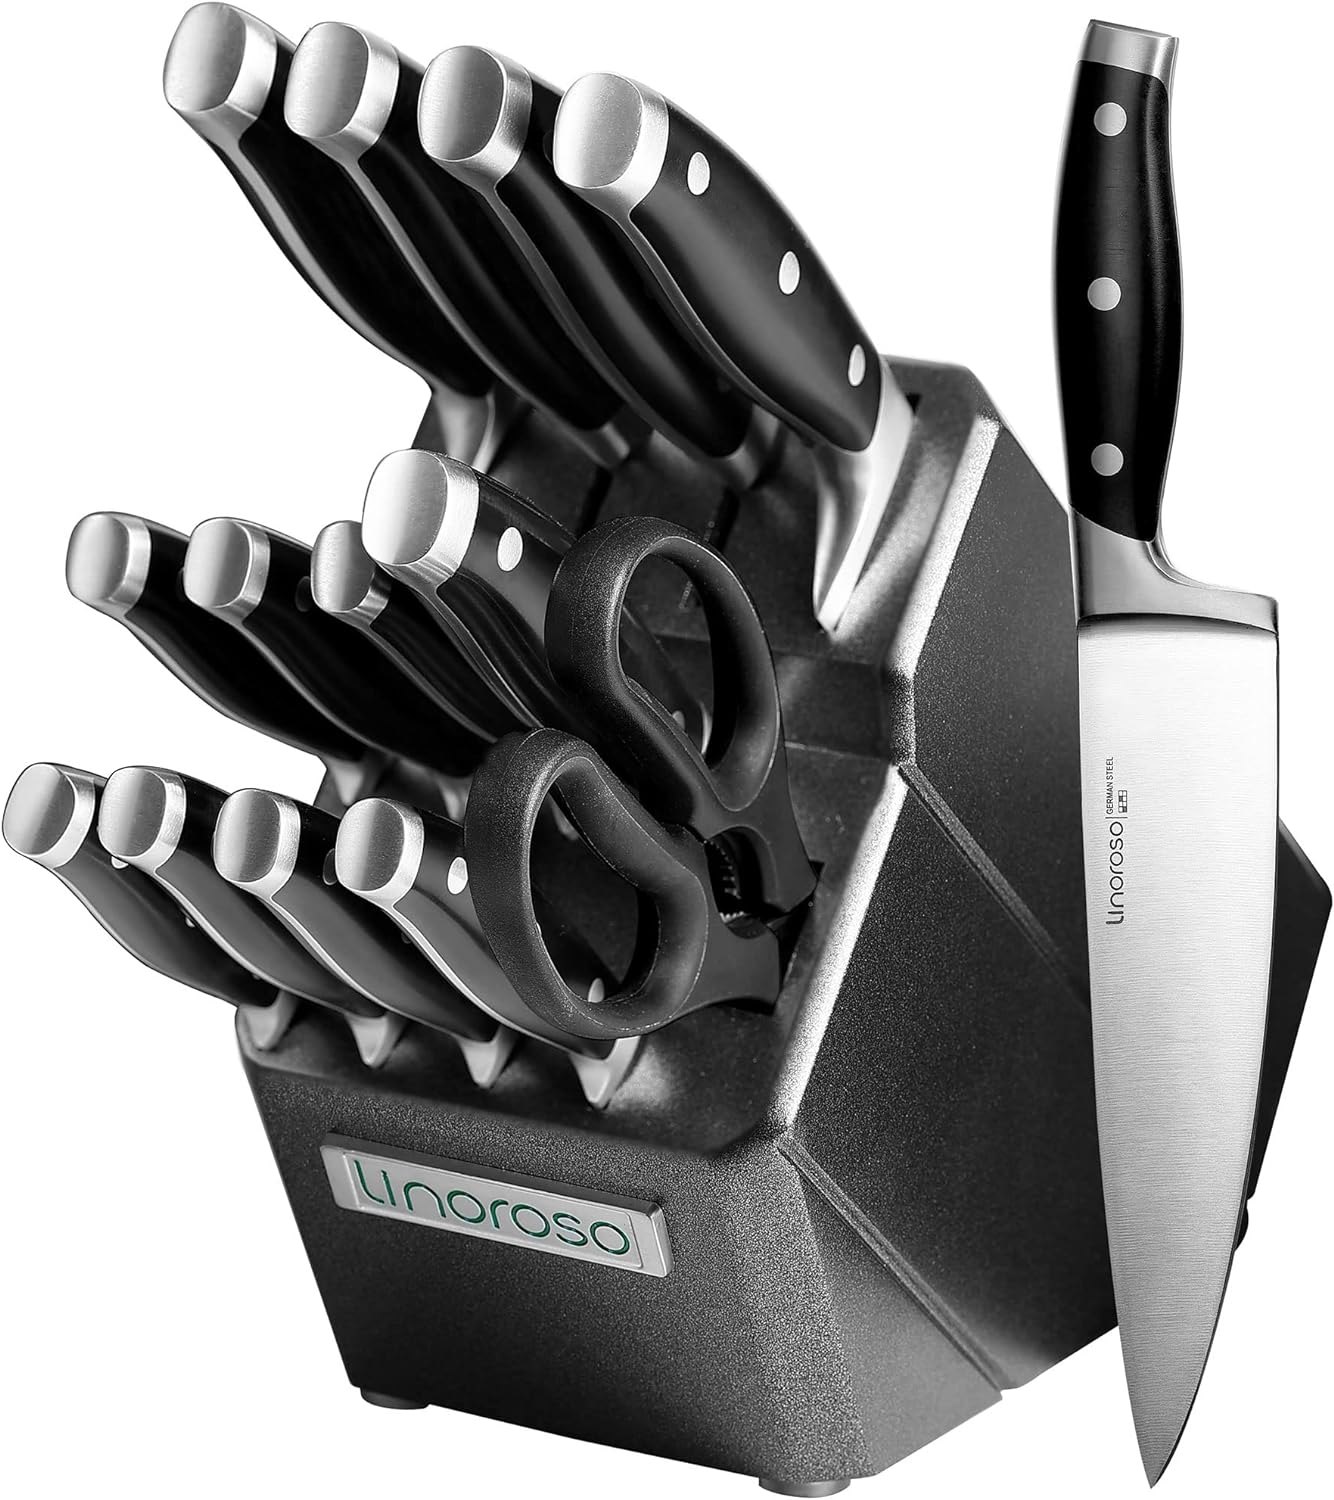 Comment choisir un set de couteaux de cuisine ?